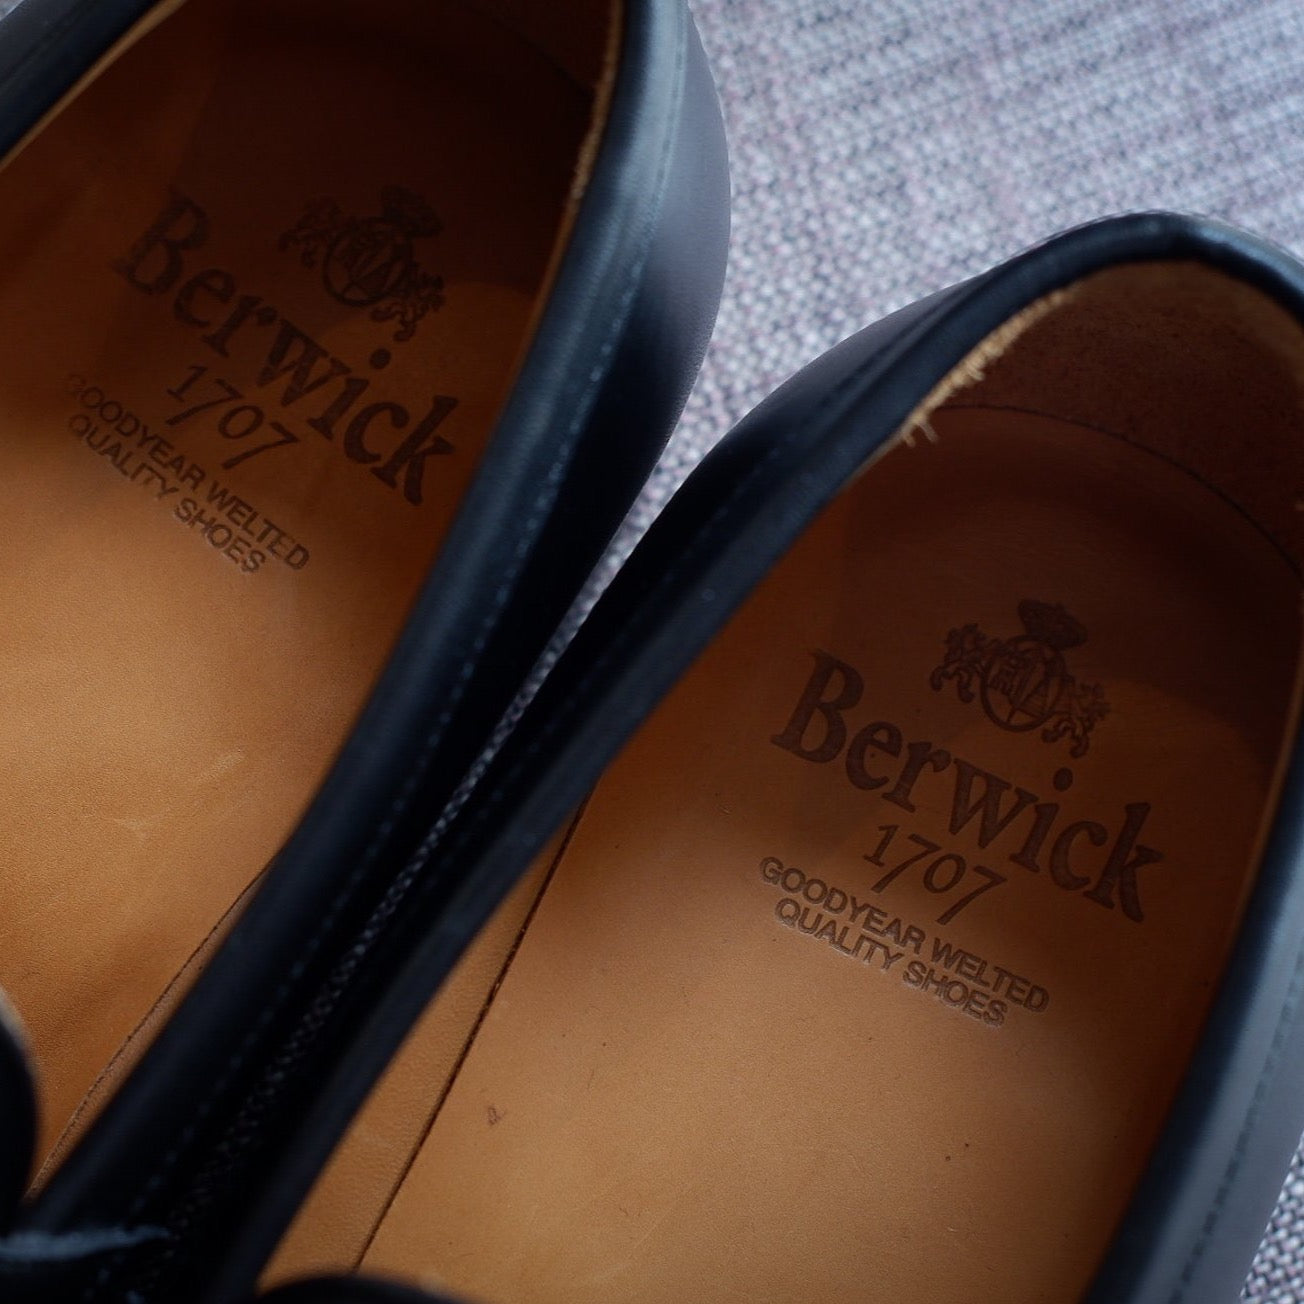 Berwick 1707 Penny Loafer in Black Calf